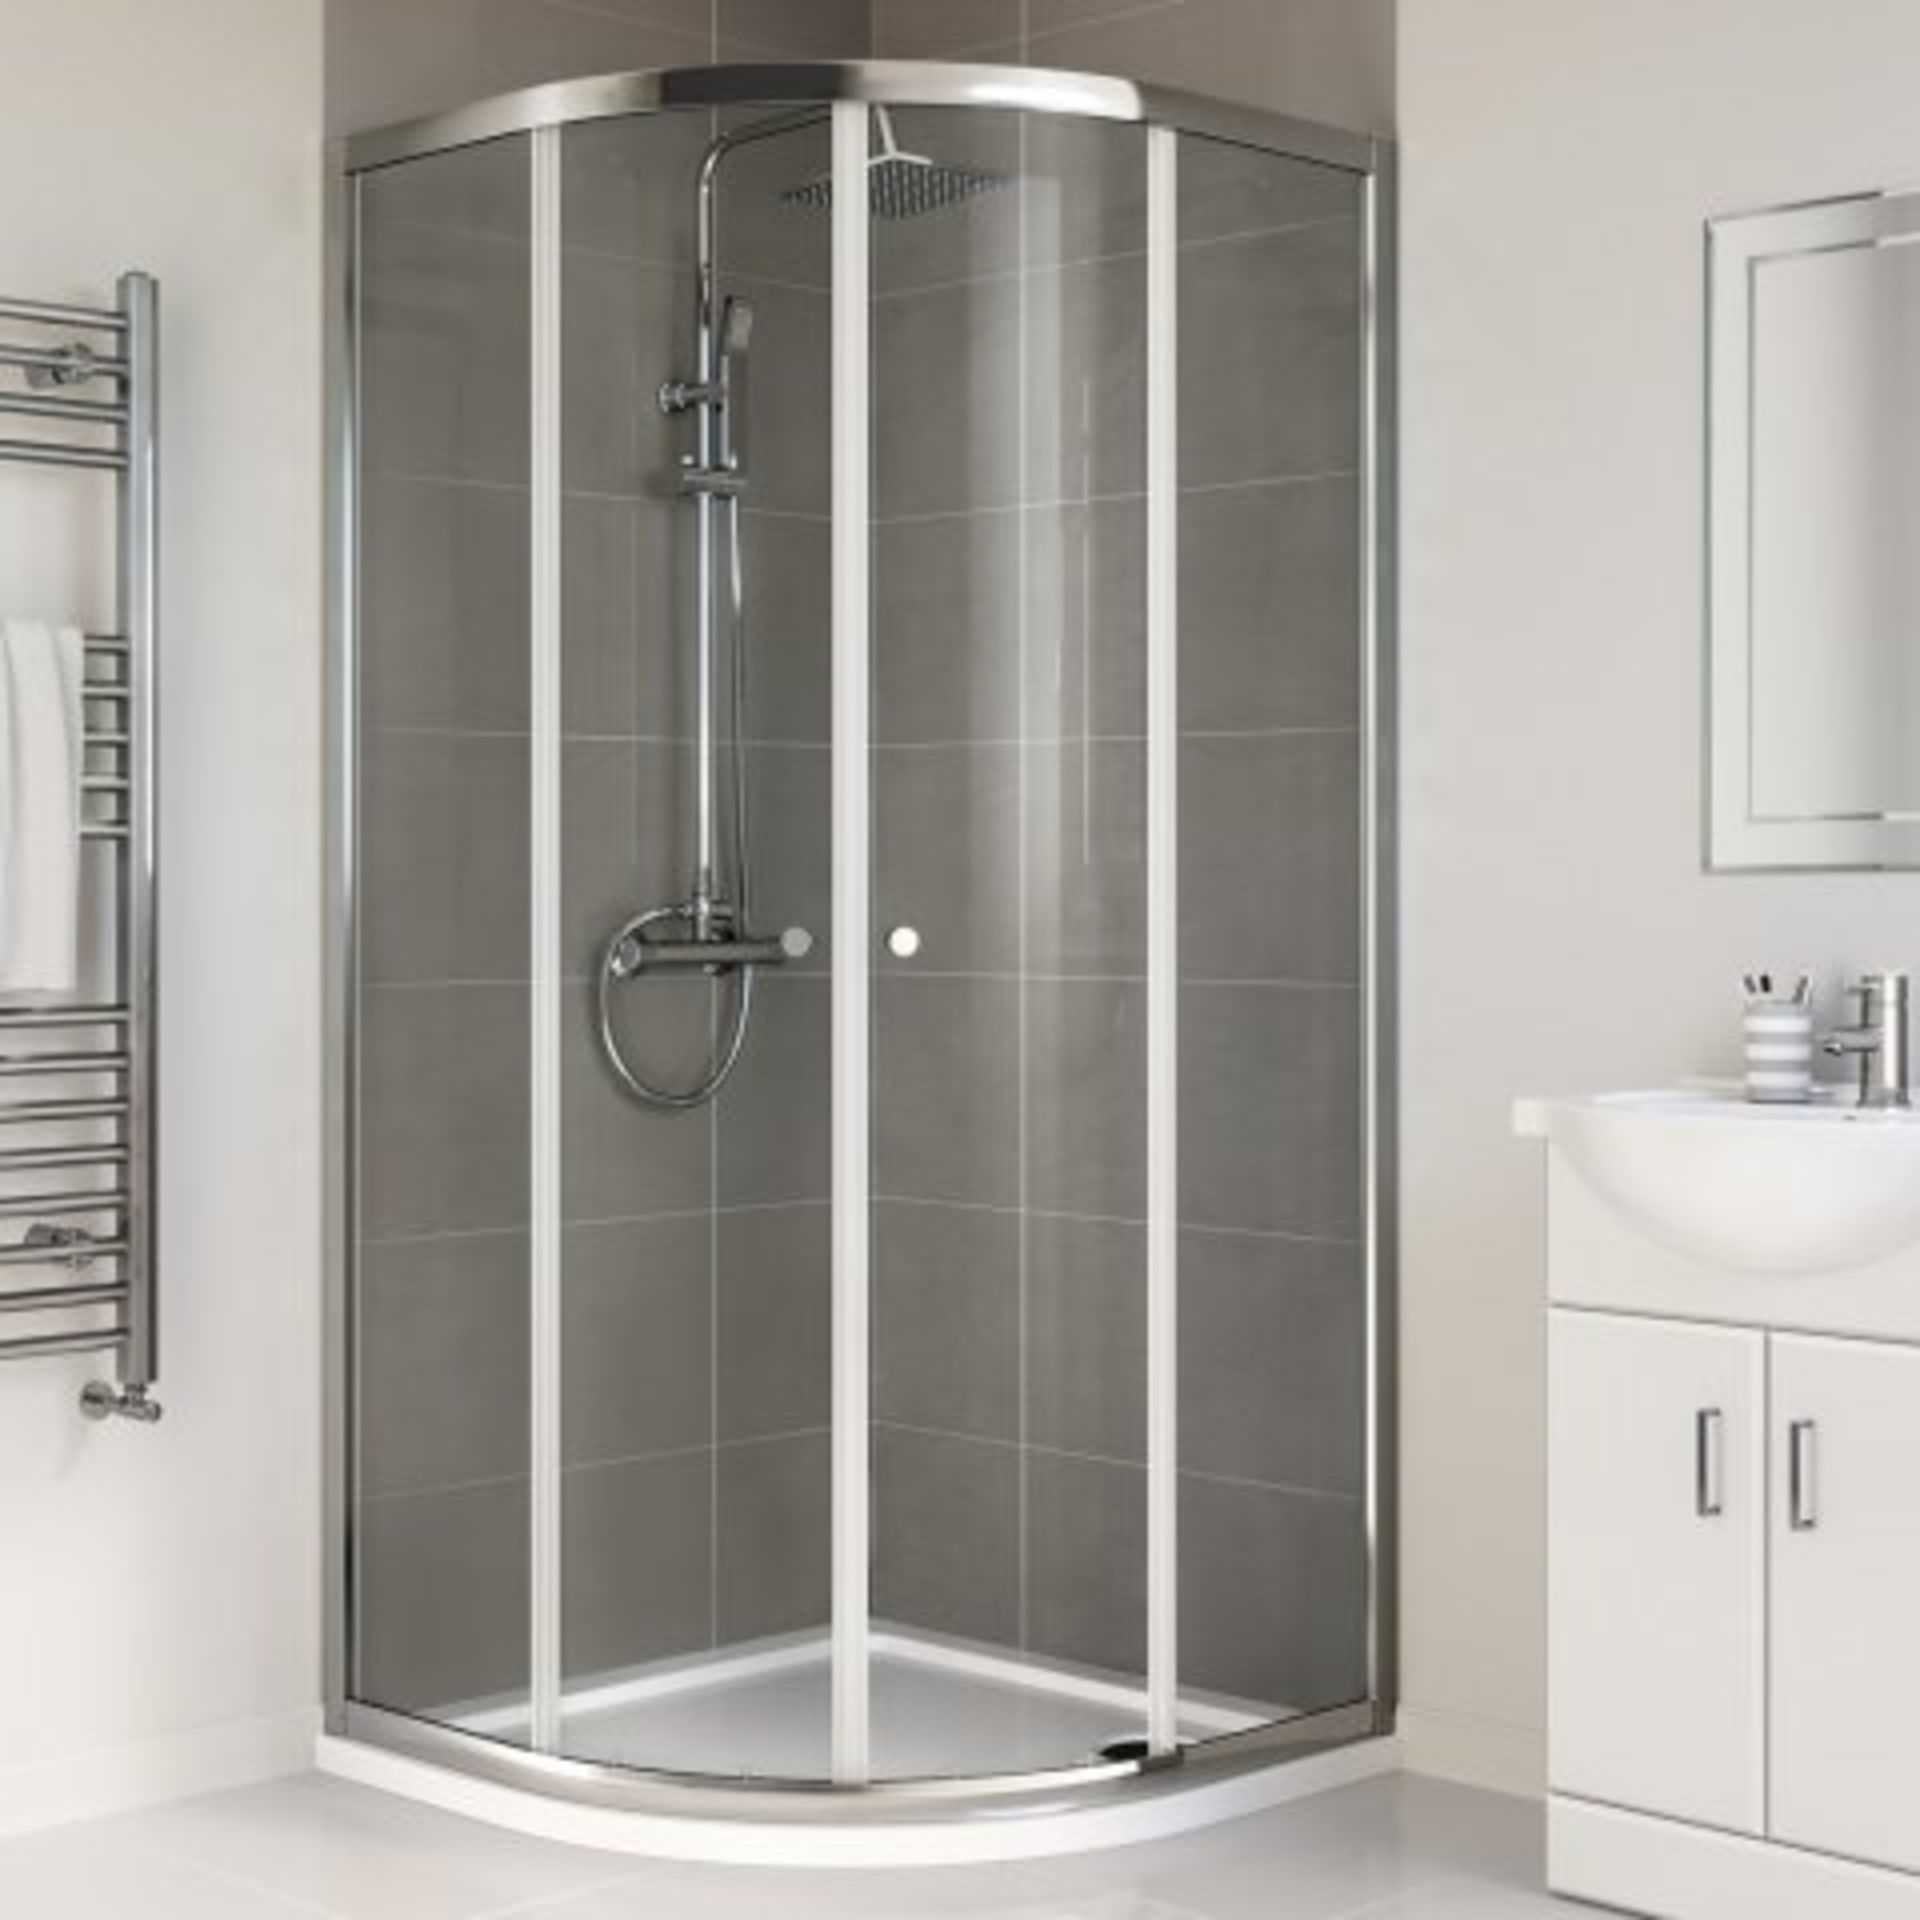 (P263) 900x900mm - Elements Quadrant Shower Enclosure. RRP £299.99. Budget Solution Our entry